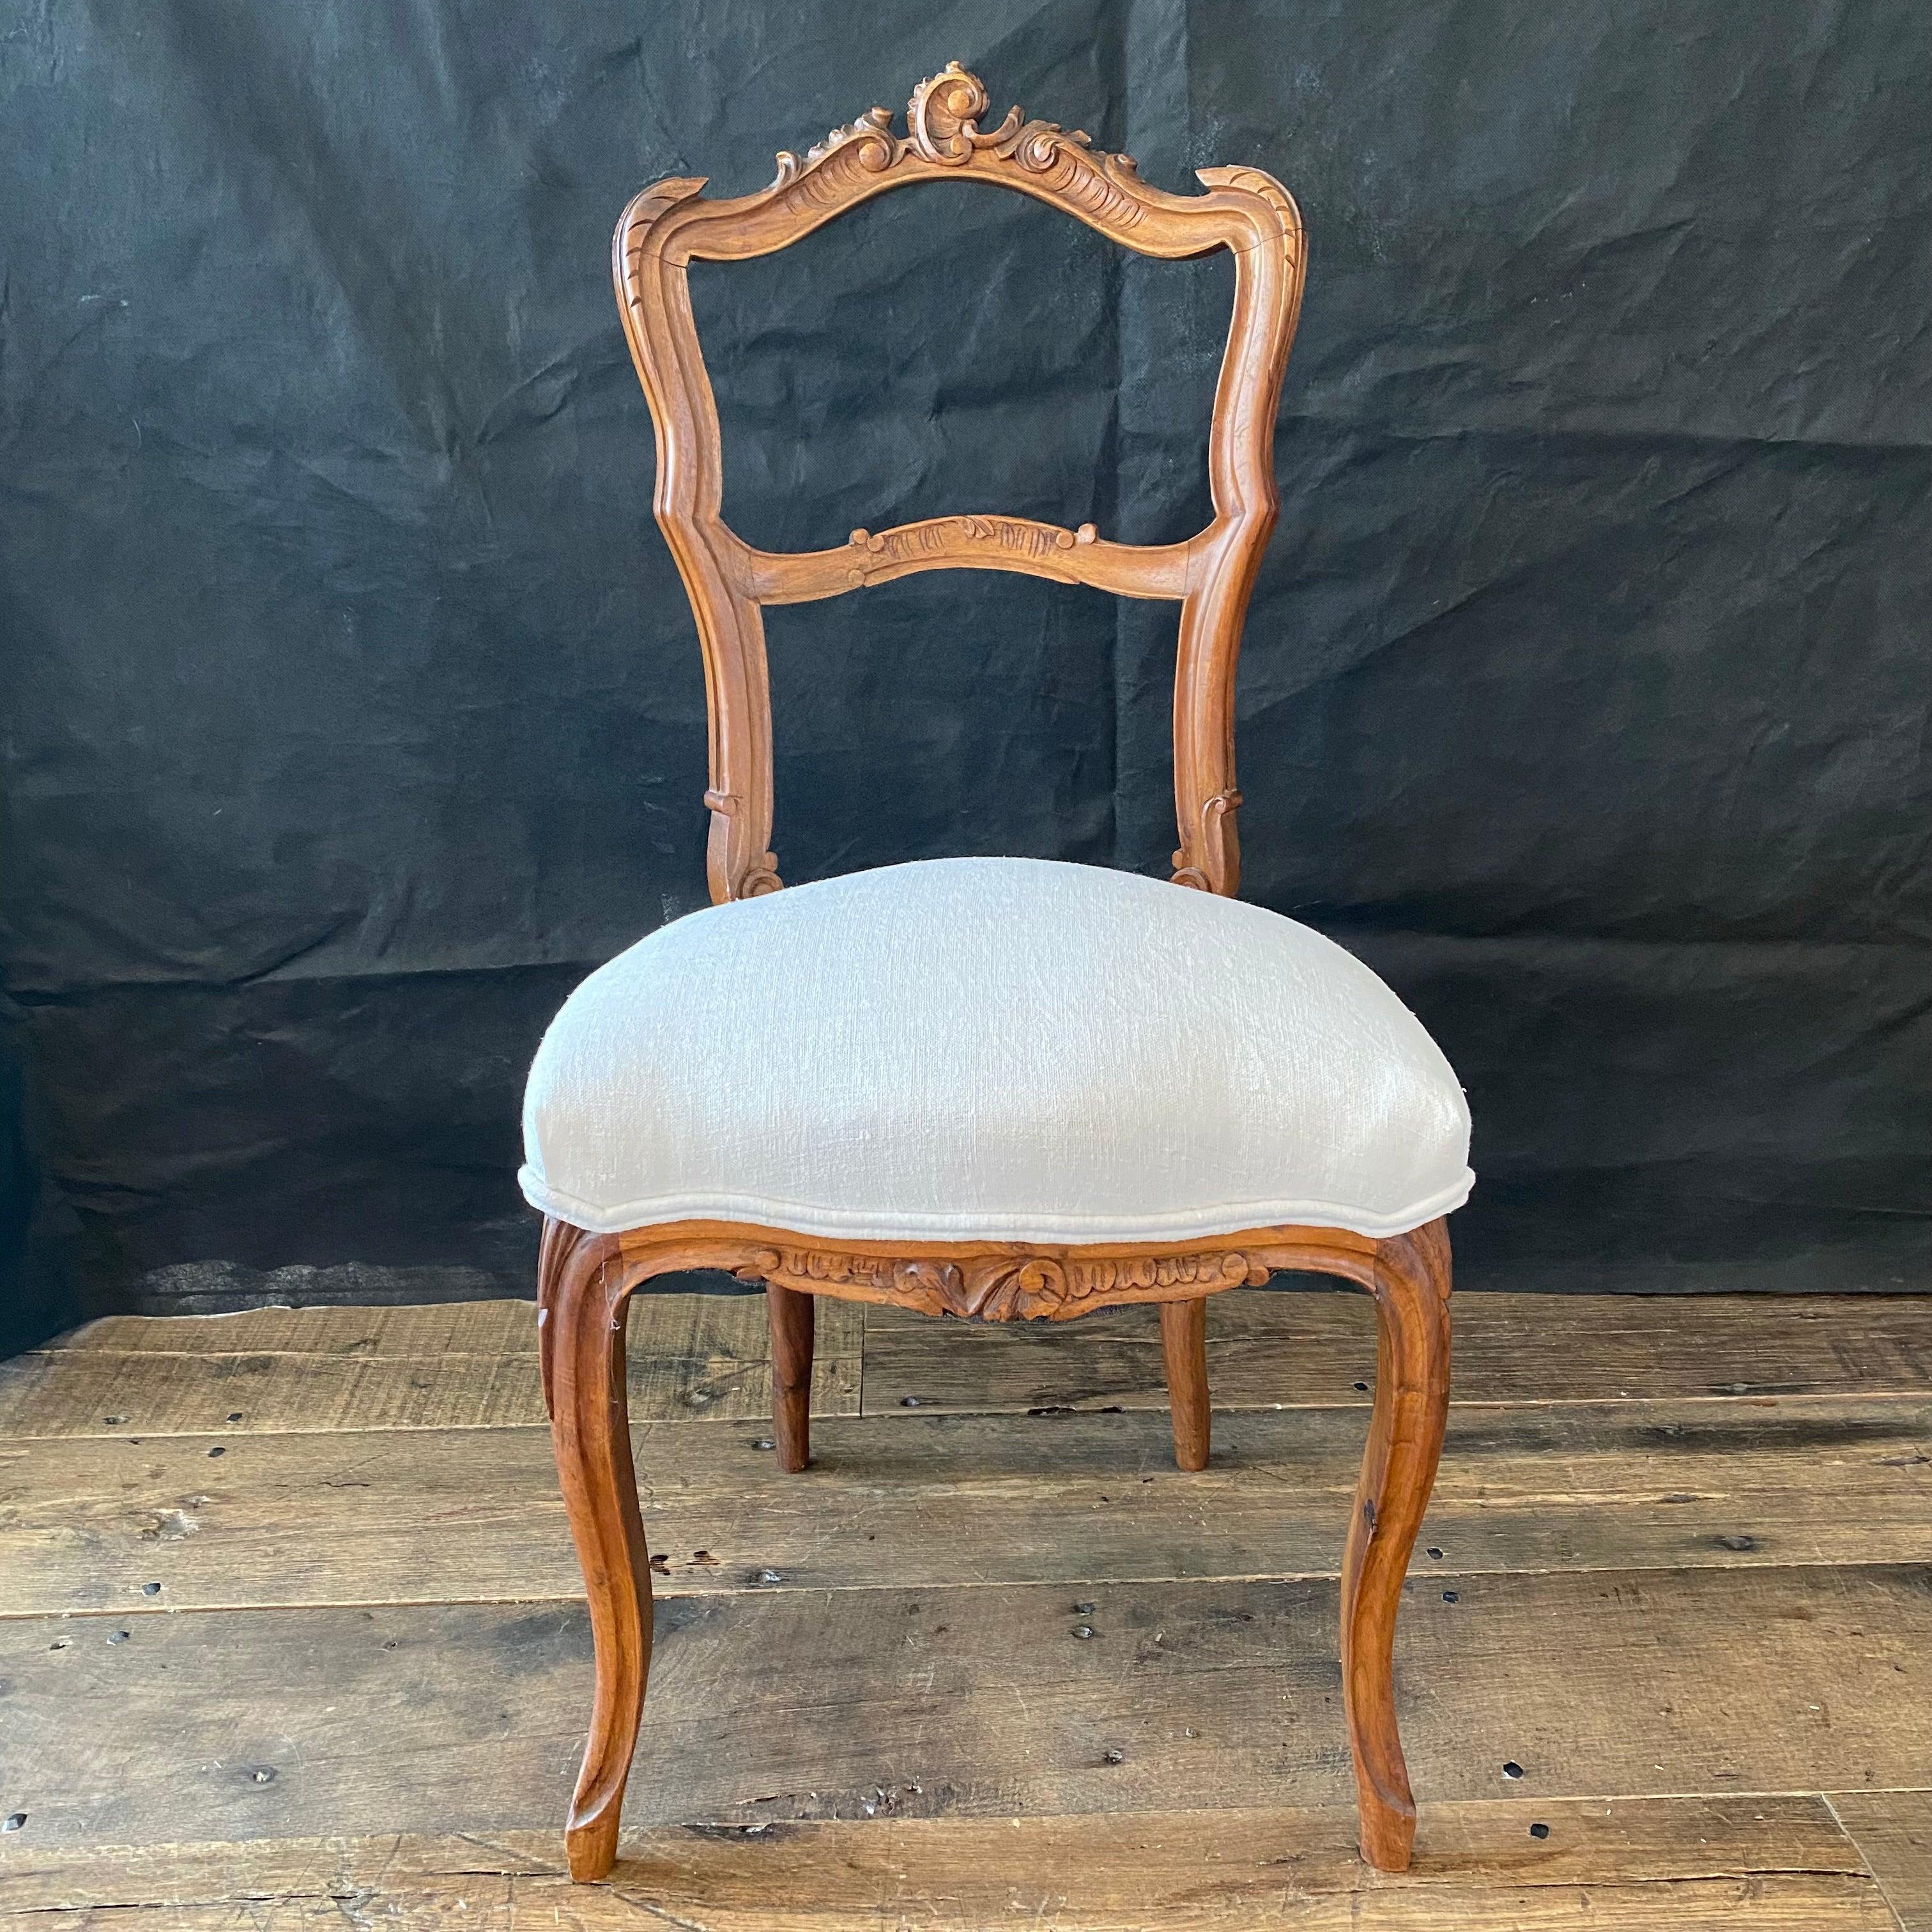 Ein wirklich hochwertiges Paar Louis XV Beistellstühle, die außerhalb von Paris gekauft wurden und schöne handgeschnitzte Nussbaumlehnen, Schürzen und Cabriolettbeine haben. Die neue, neutrale Polsterung hebt die schönen Details der Stühle